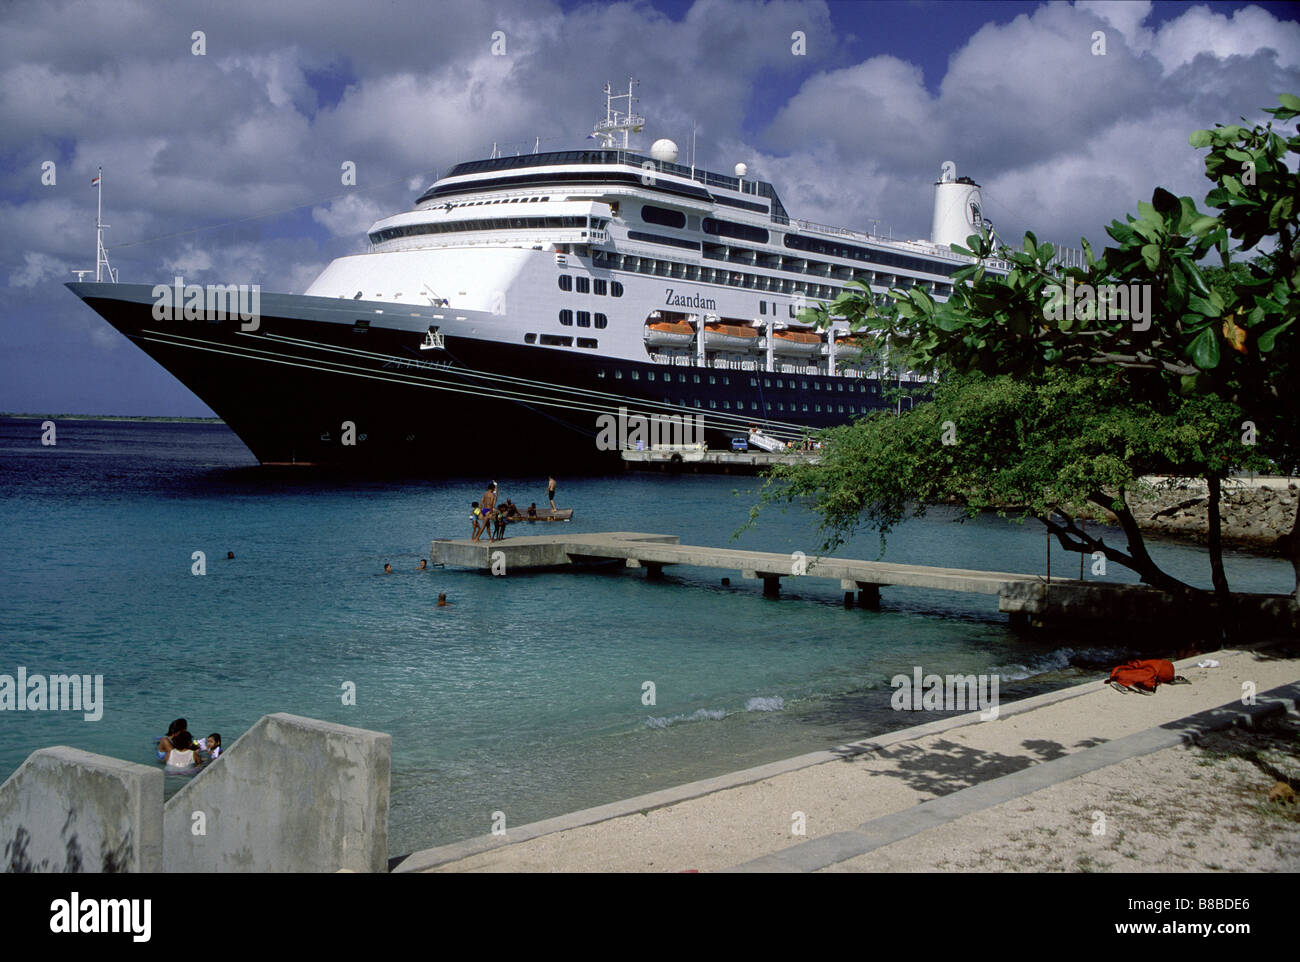 Imageworks Photographic; Cruise Ship  Port  Bonaire, Caribbean Stock Photo